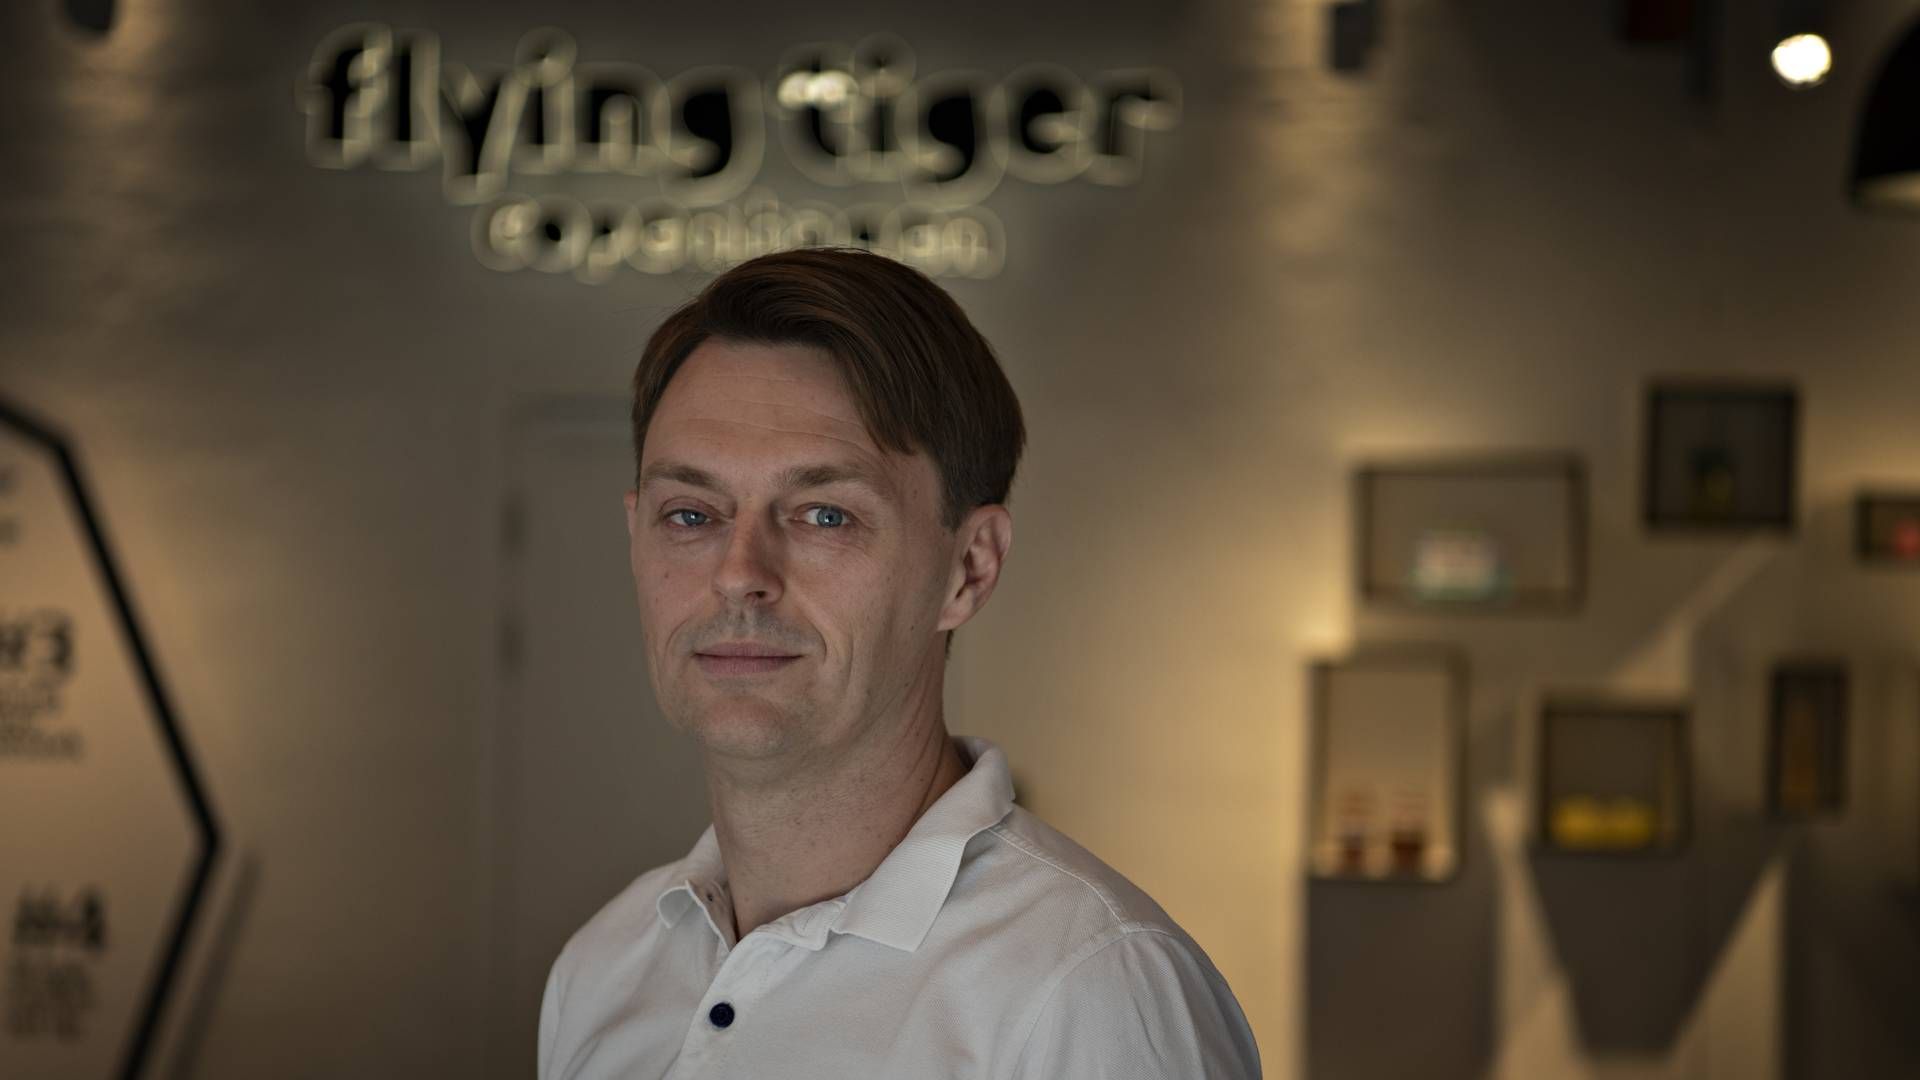 Detailkæden Flying Tiger Copenhagen vil i løbet af fire-frem år udvide med 500 franchise-butikker uden for Europa. Det fortæller selskabets topchef Martin Jermiin. | Foto: Brian Karmark/ERH